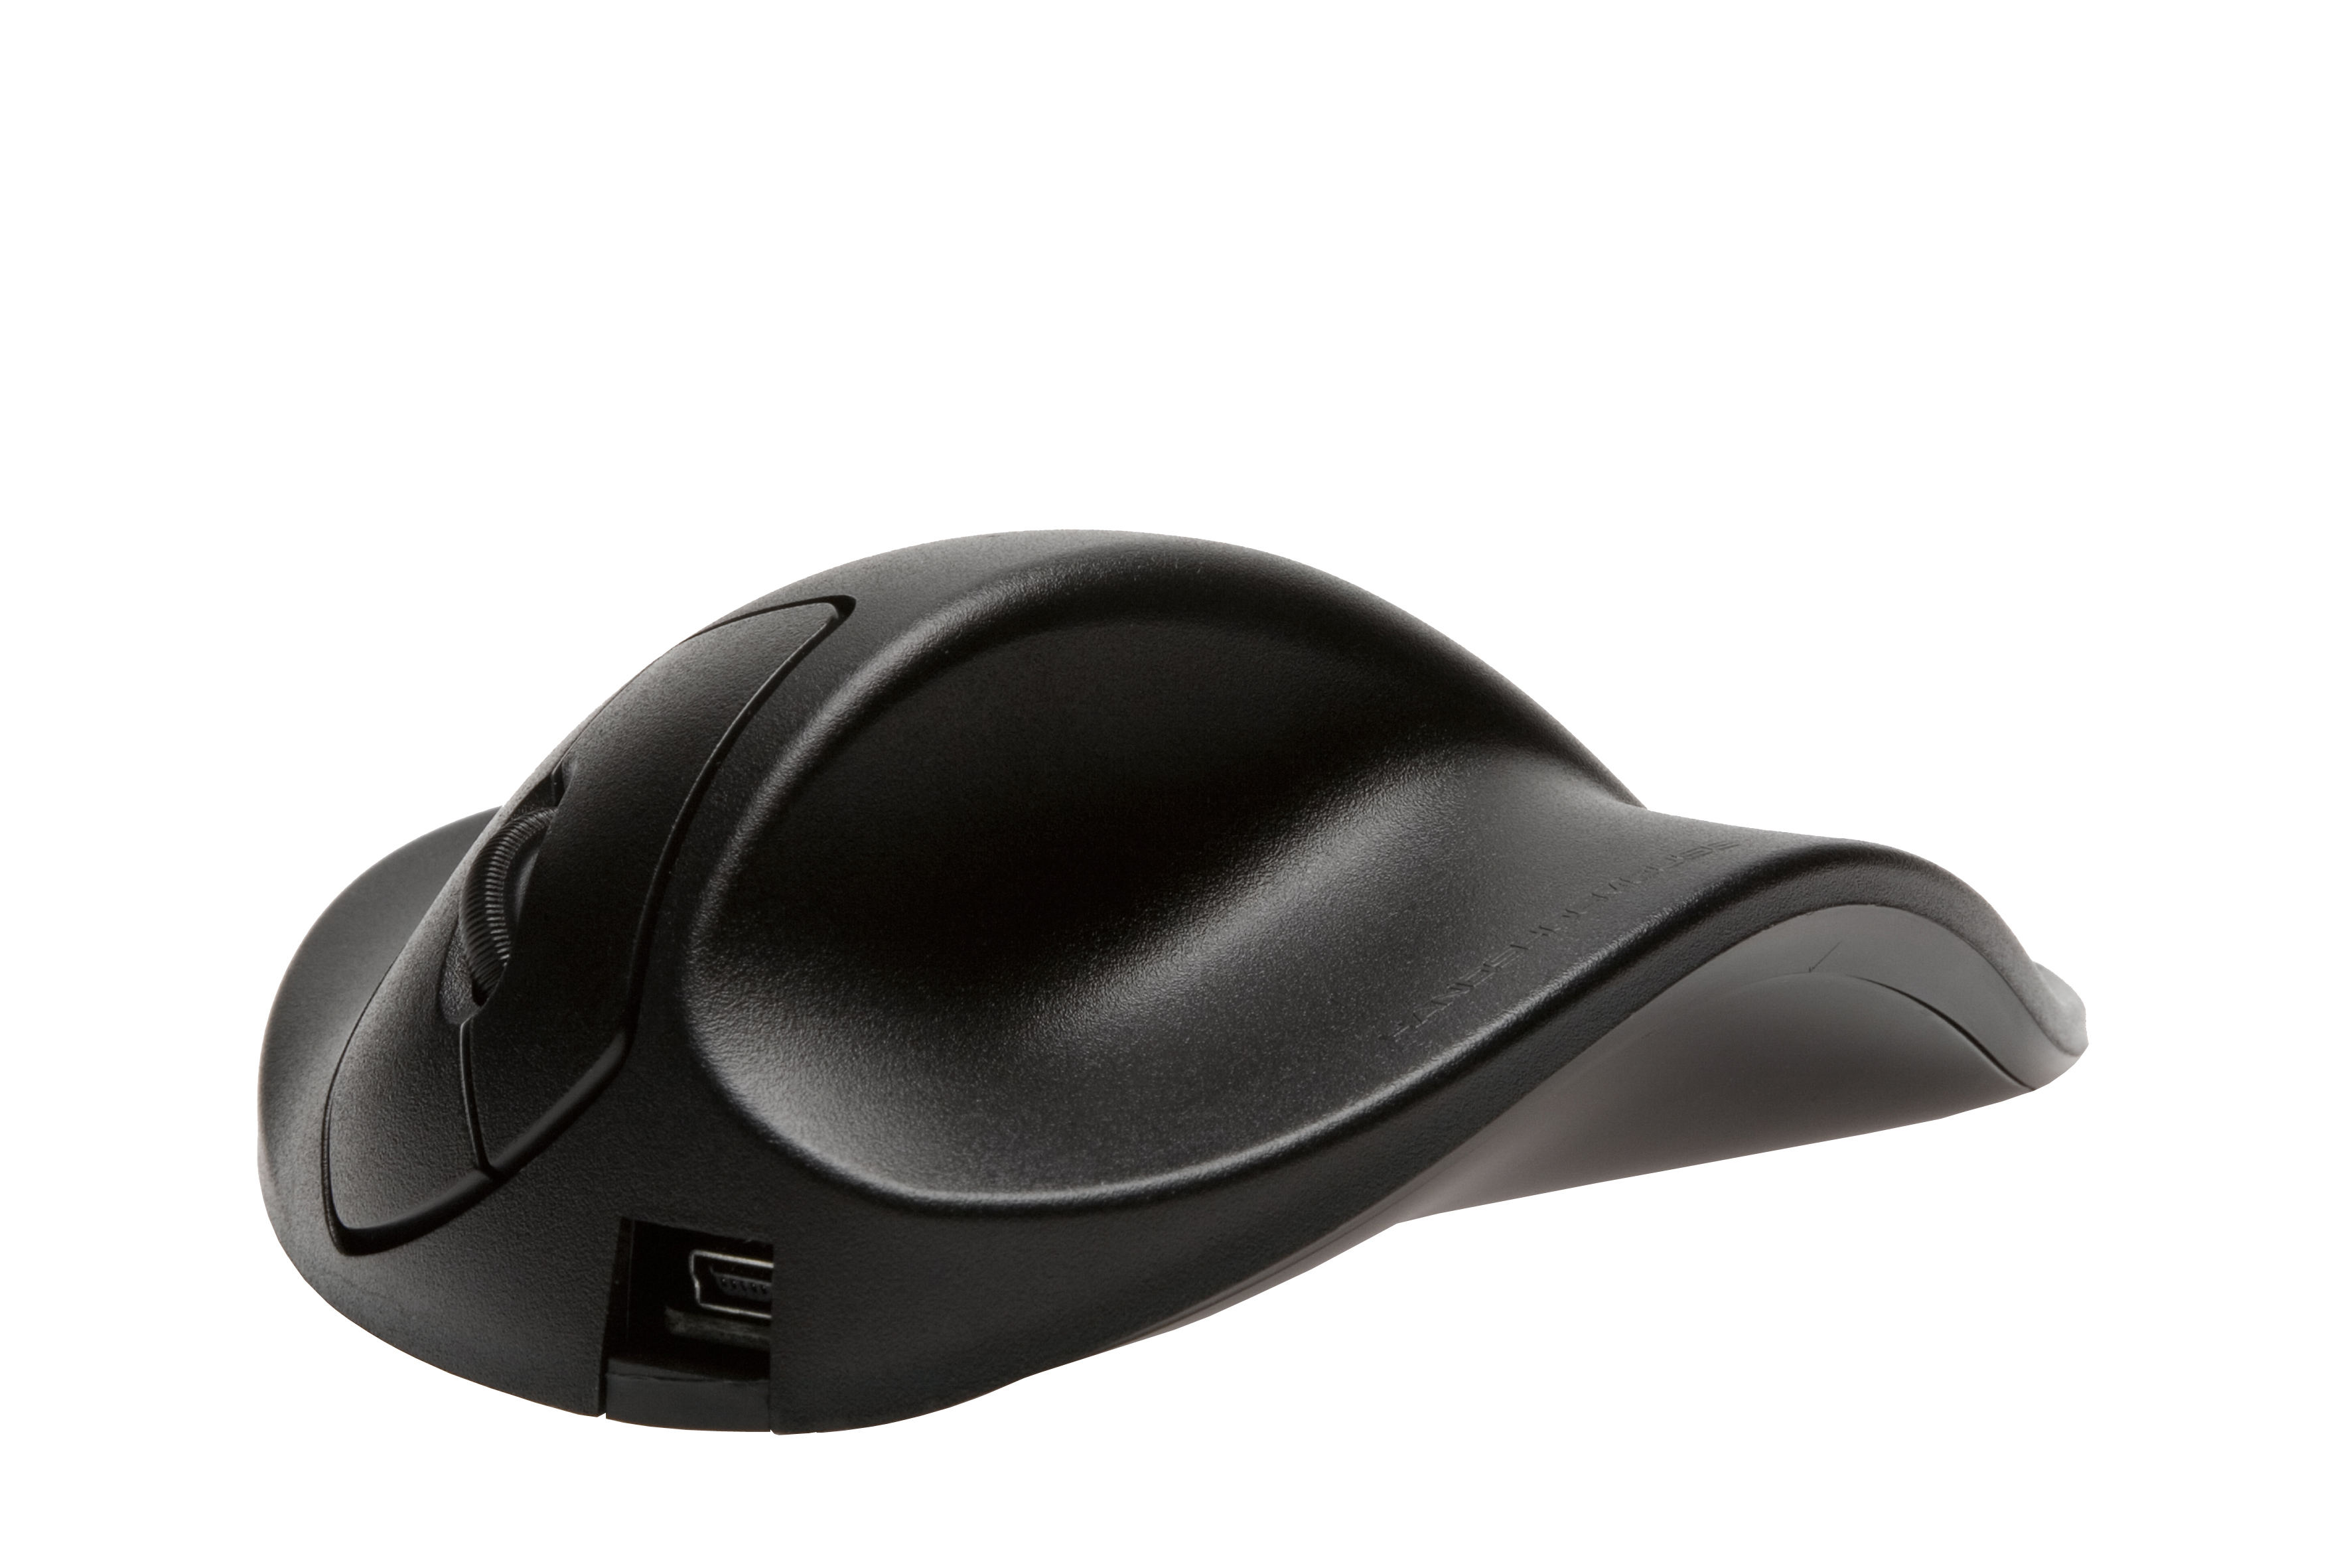 S2UB-LC Maus, schwarz HIPPUS ergonomische